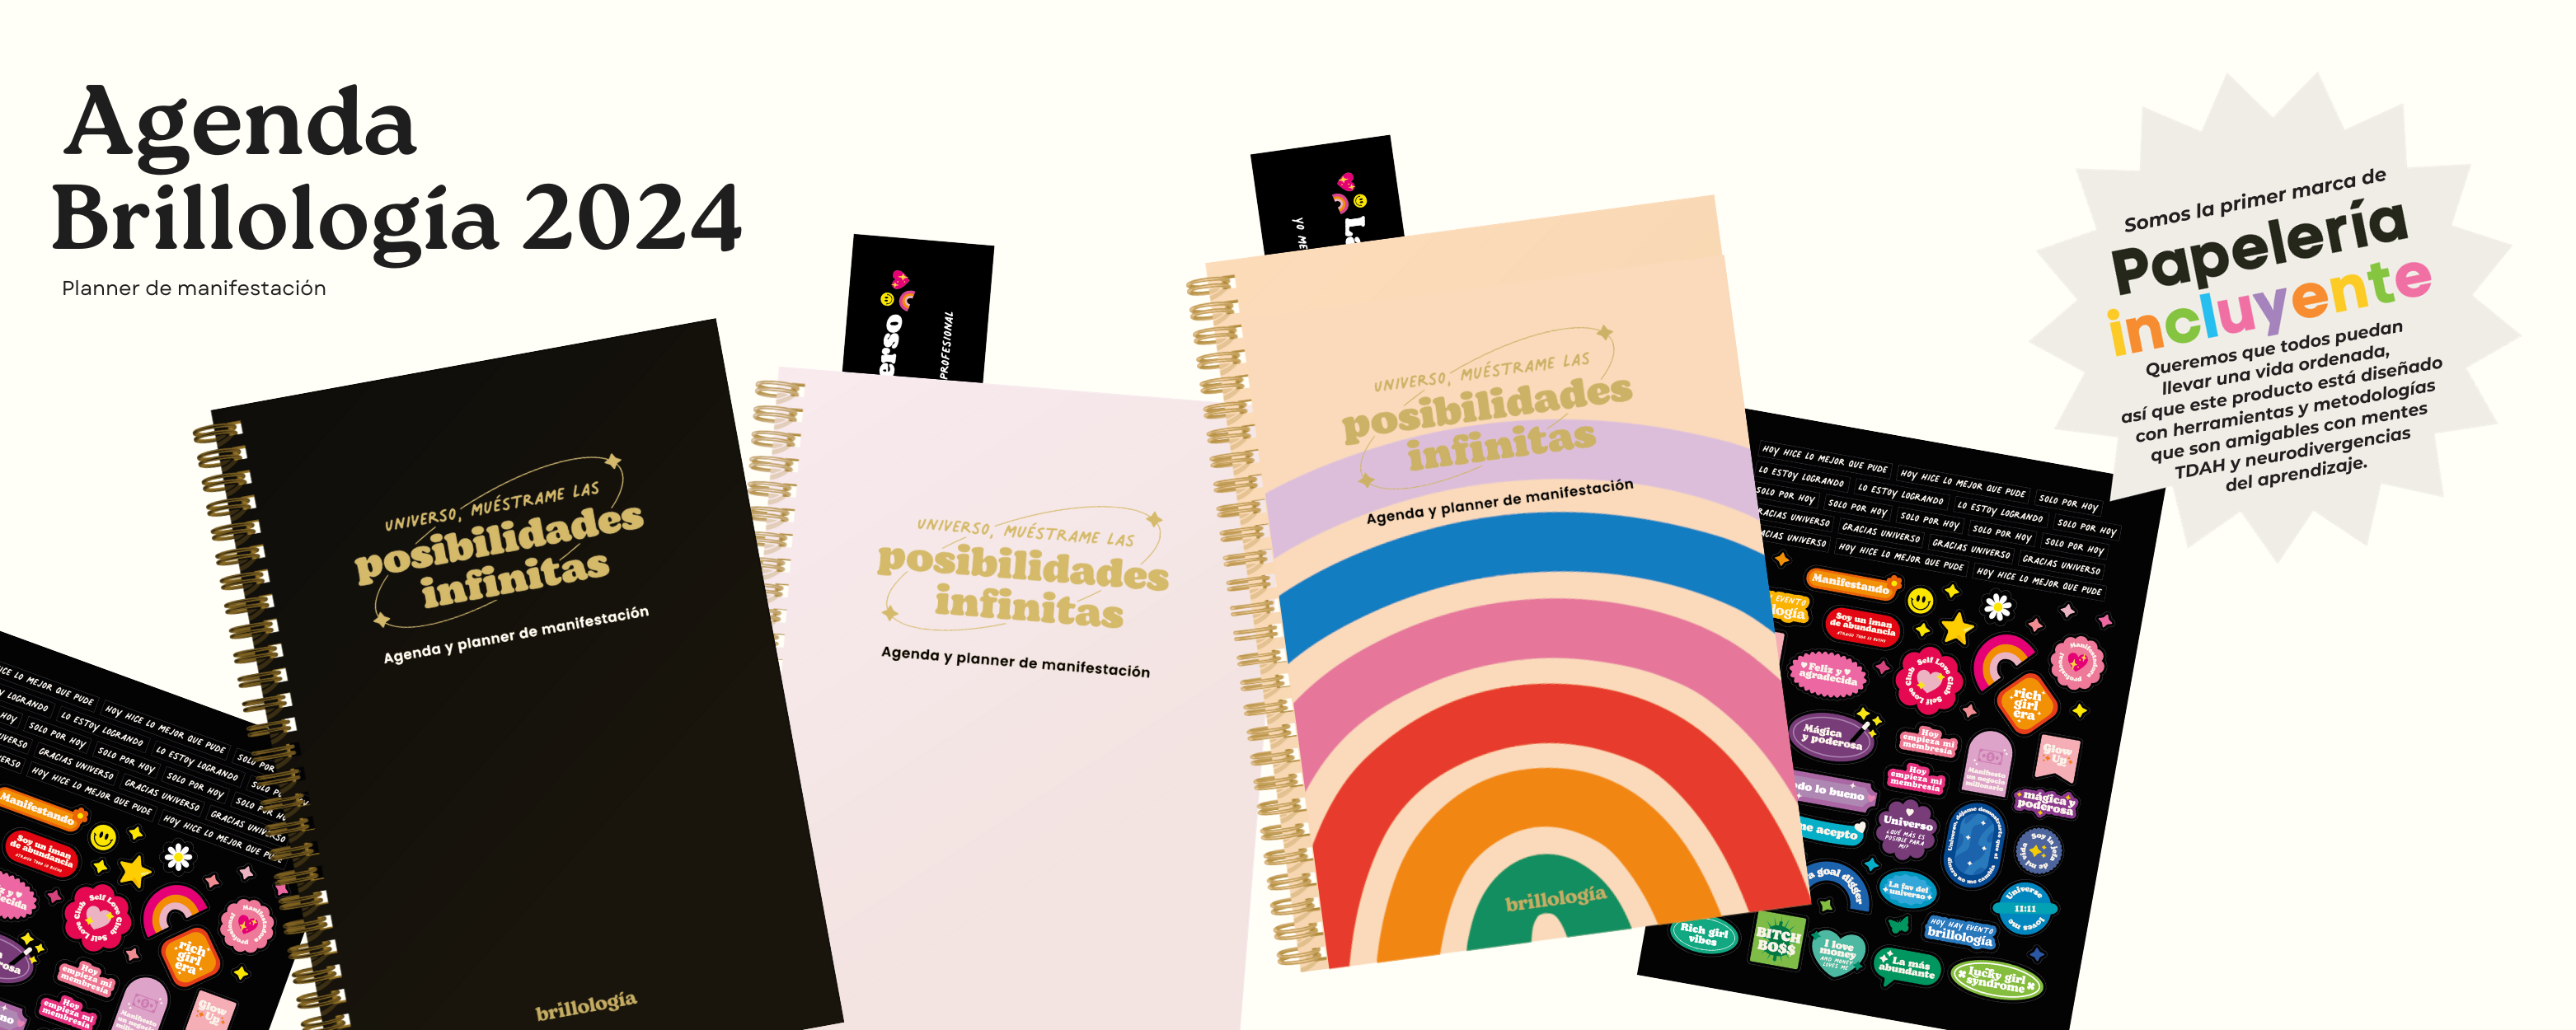 Agenda semestral  y Planner de manifestación: Posibilidades infinitas Brillología 2024